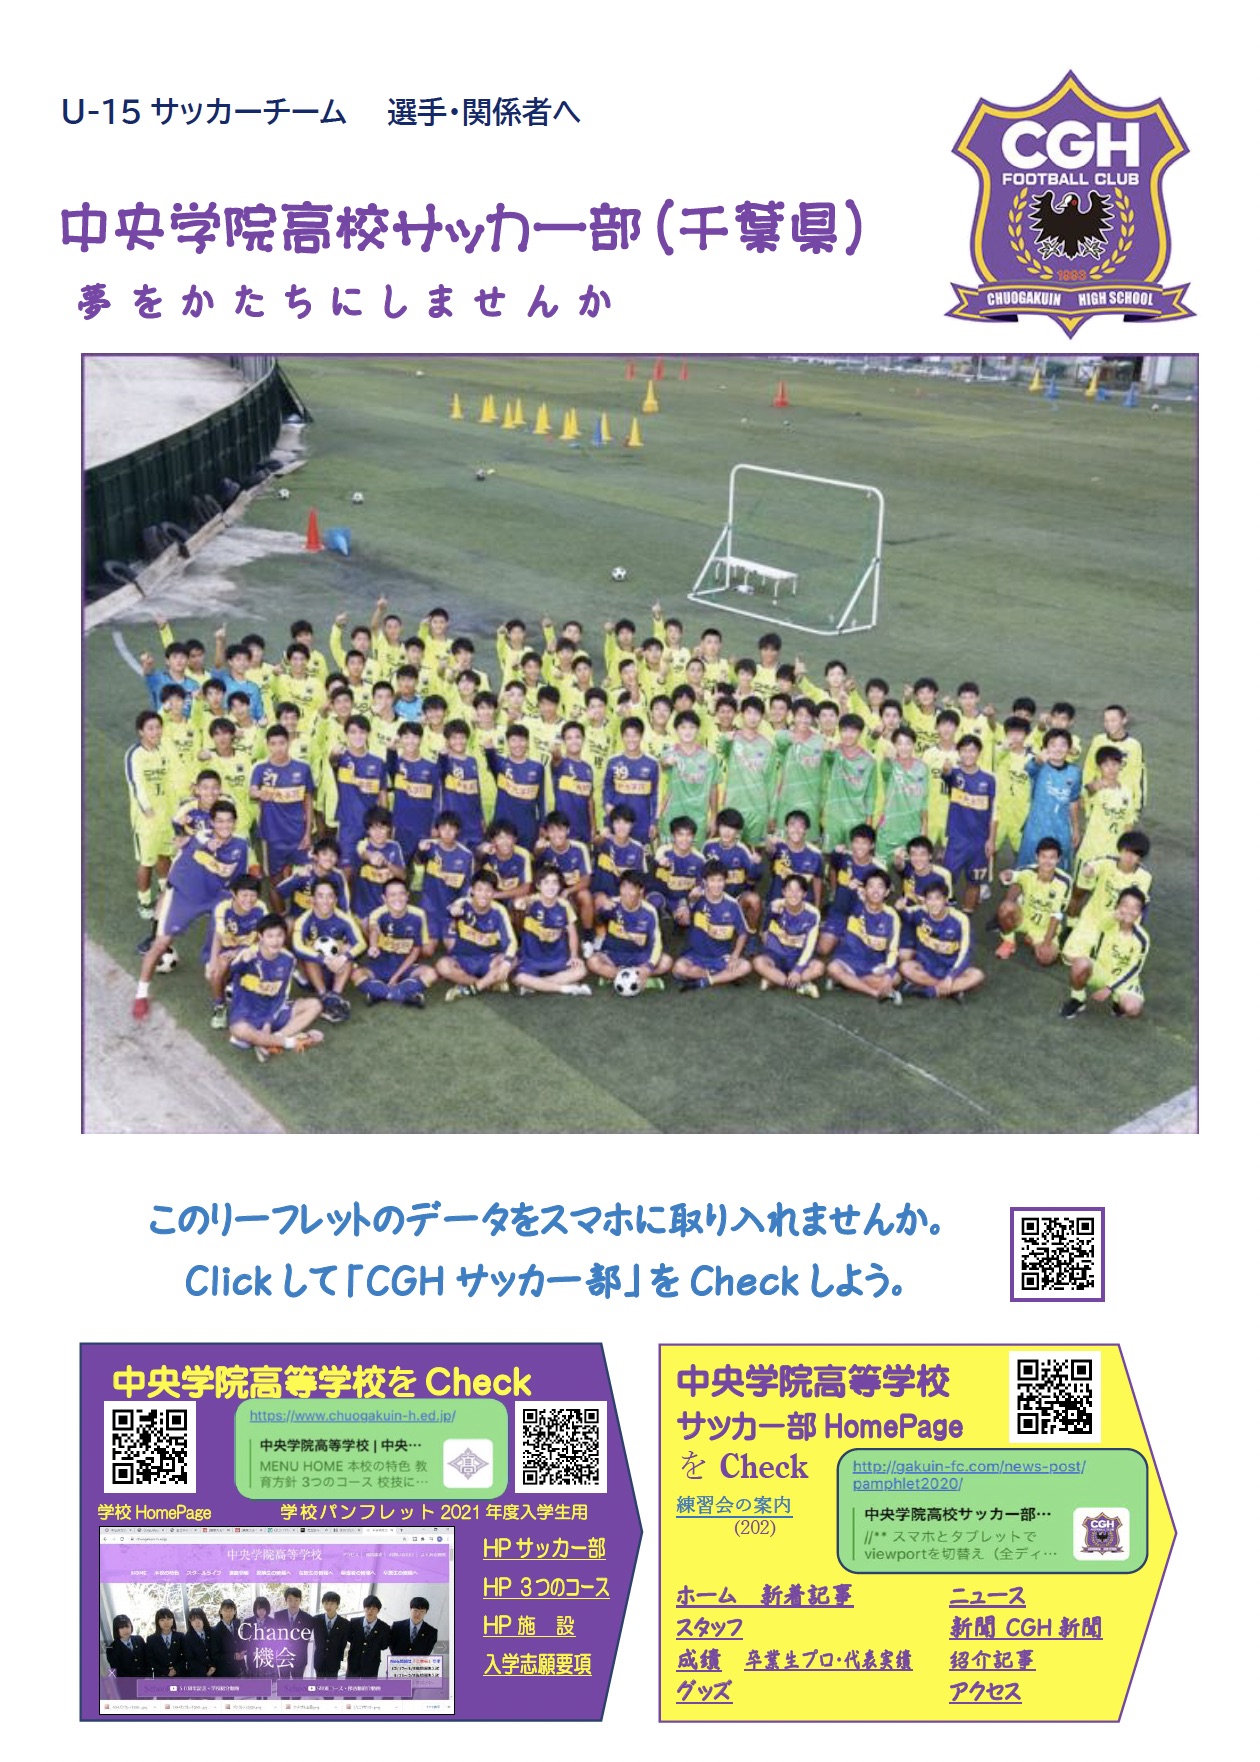 中央学院高校サッカー部 | CHUOUGAKUIN HIGH SCHOOL FOOTBALL CLUB